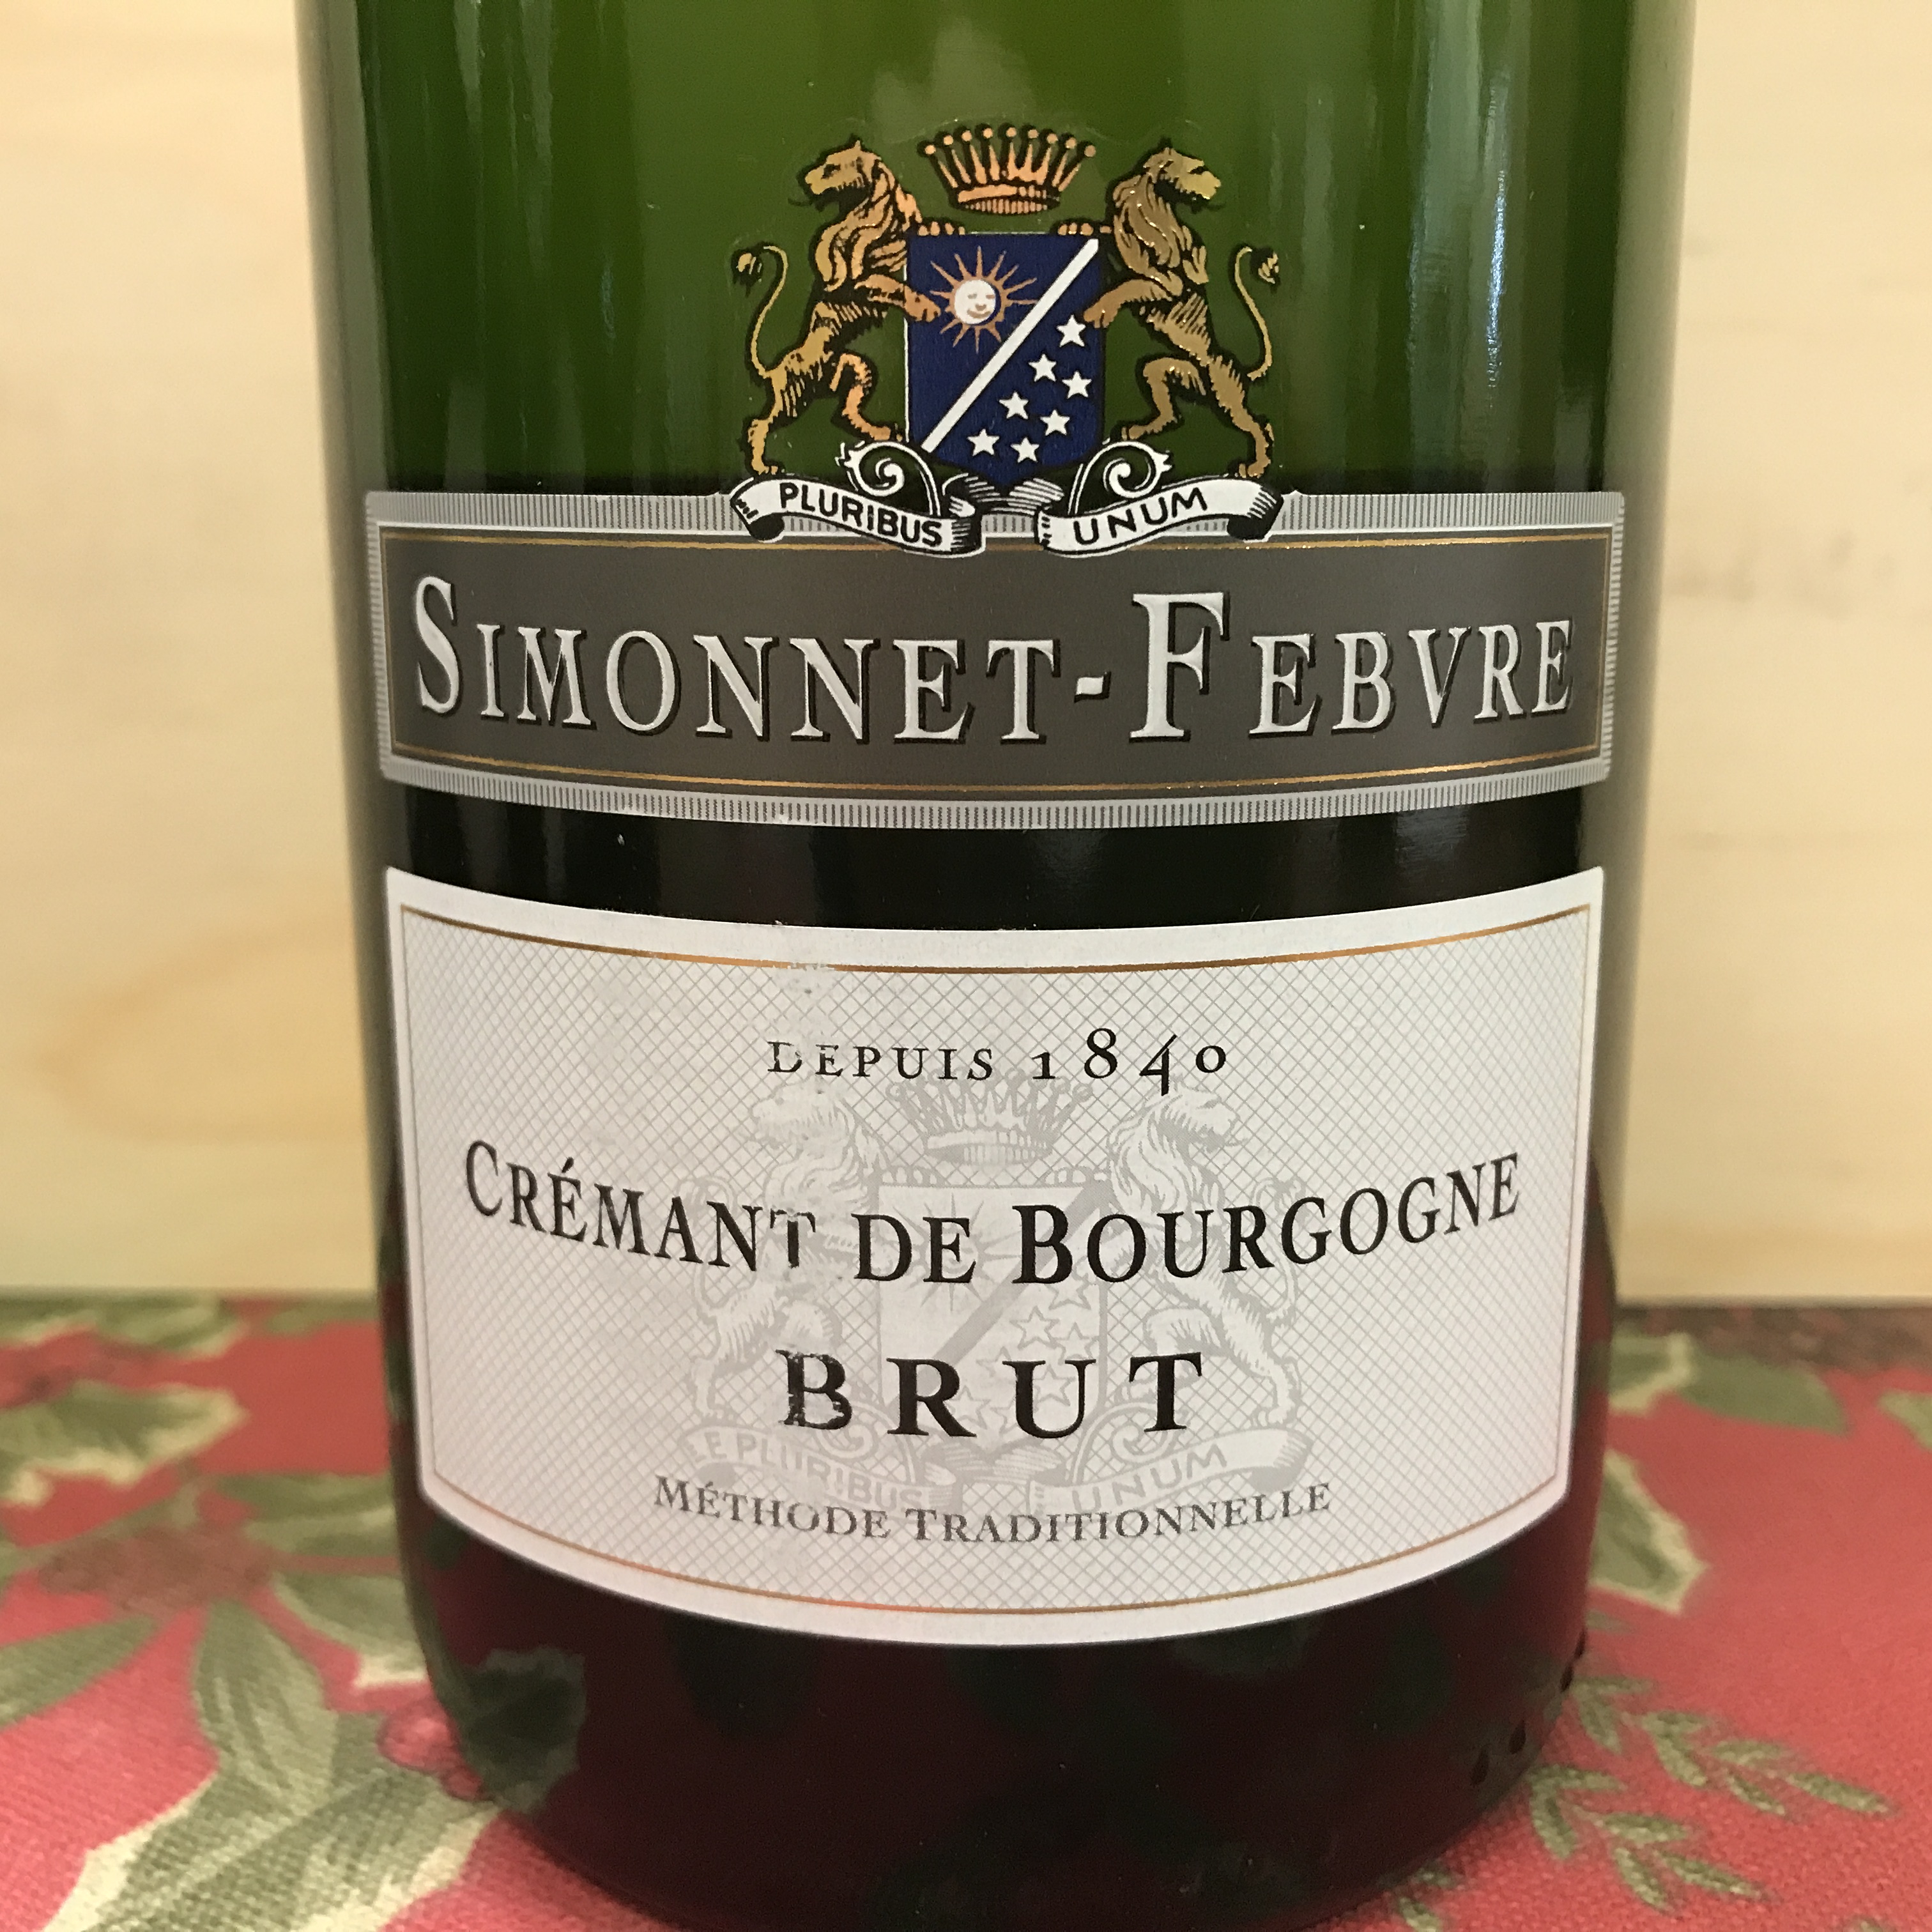 Simonnet-Febvre Cremant de Bourgogne Brut